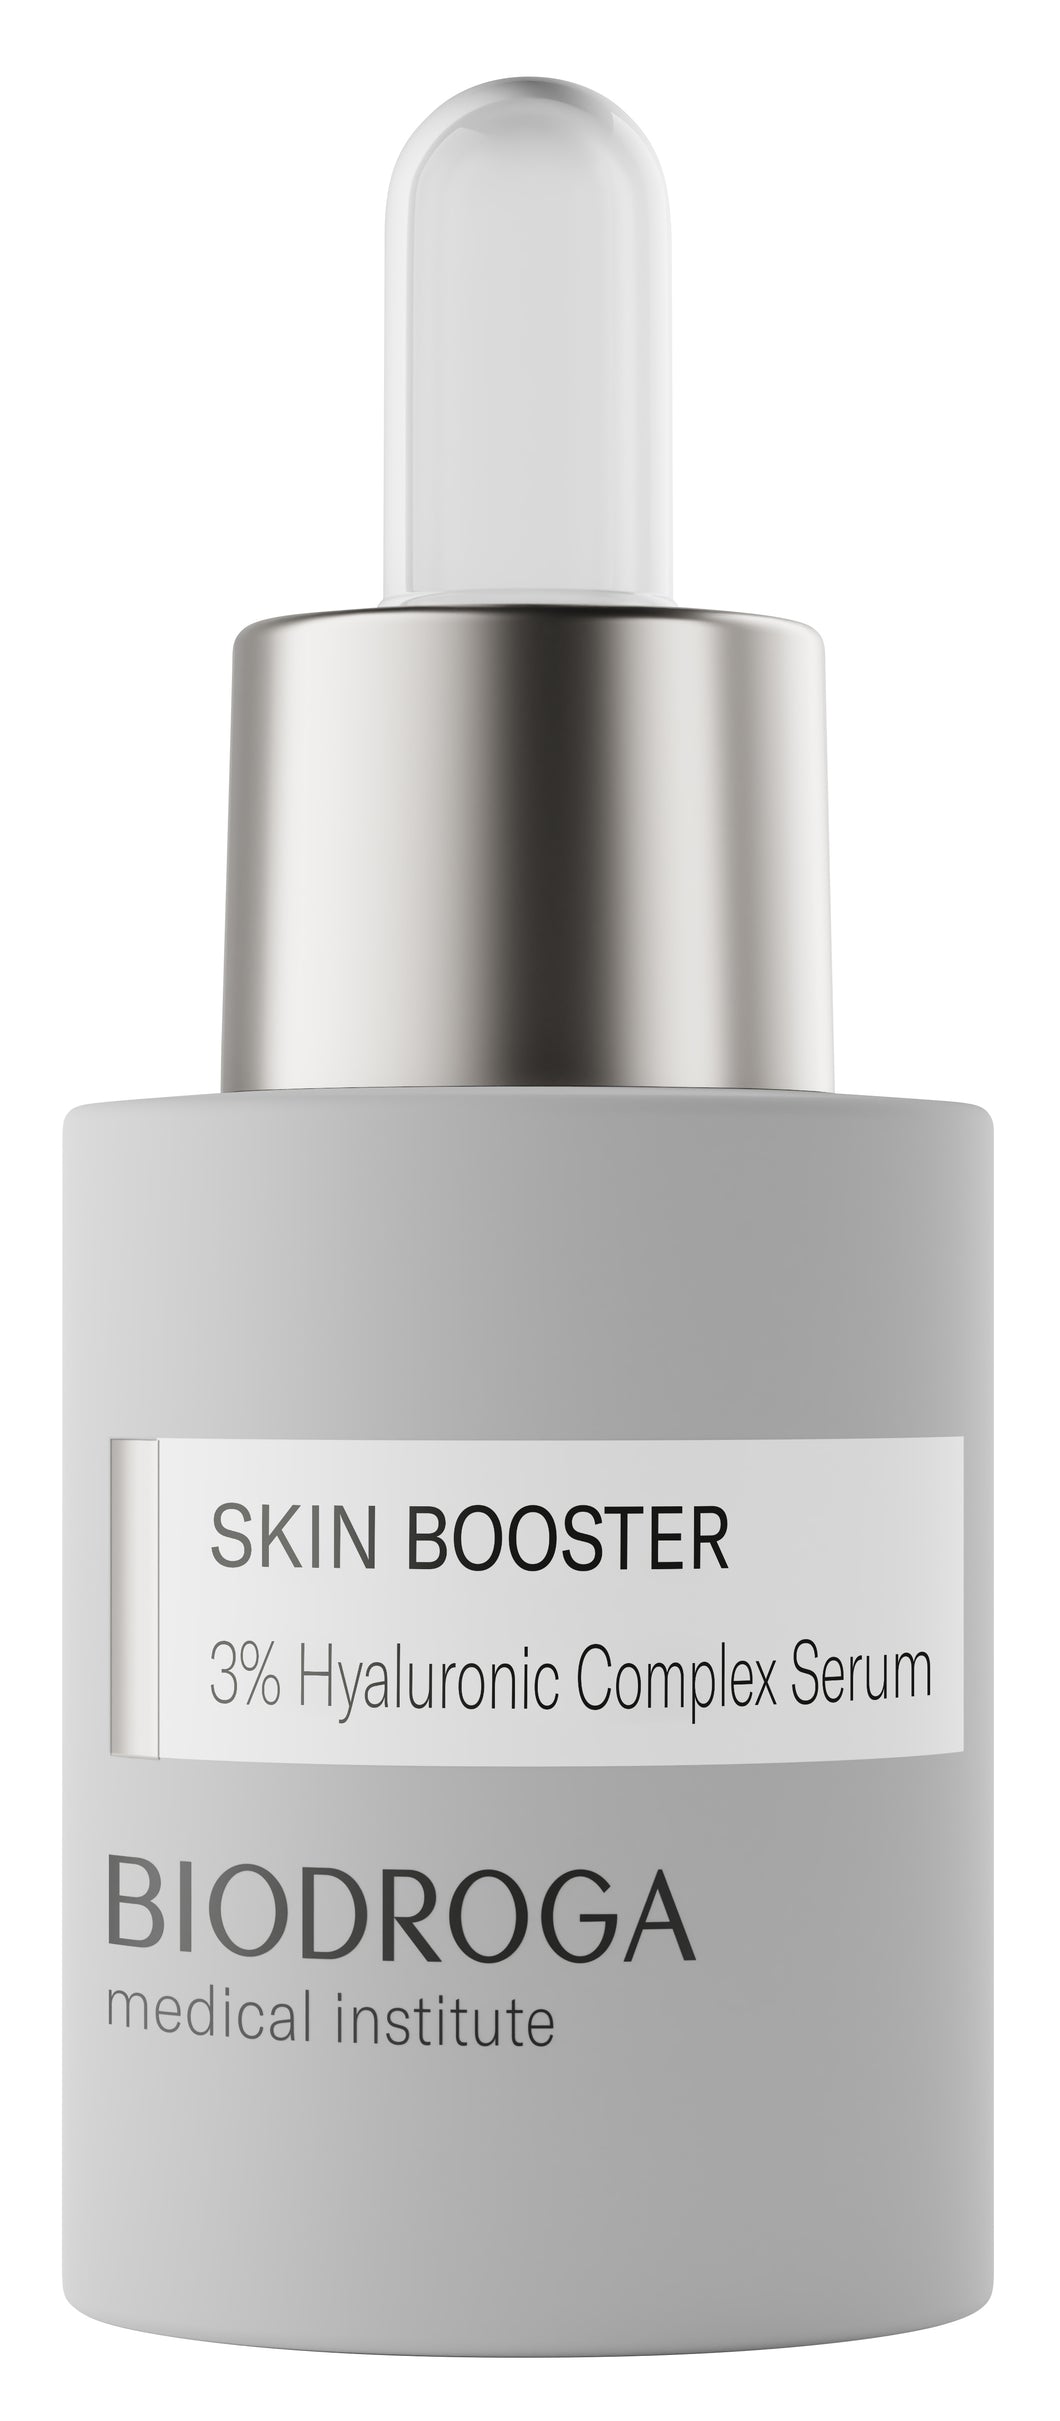 Biodroga Skin Booster 3% Hyaluronic Complex Serum